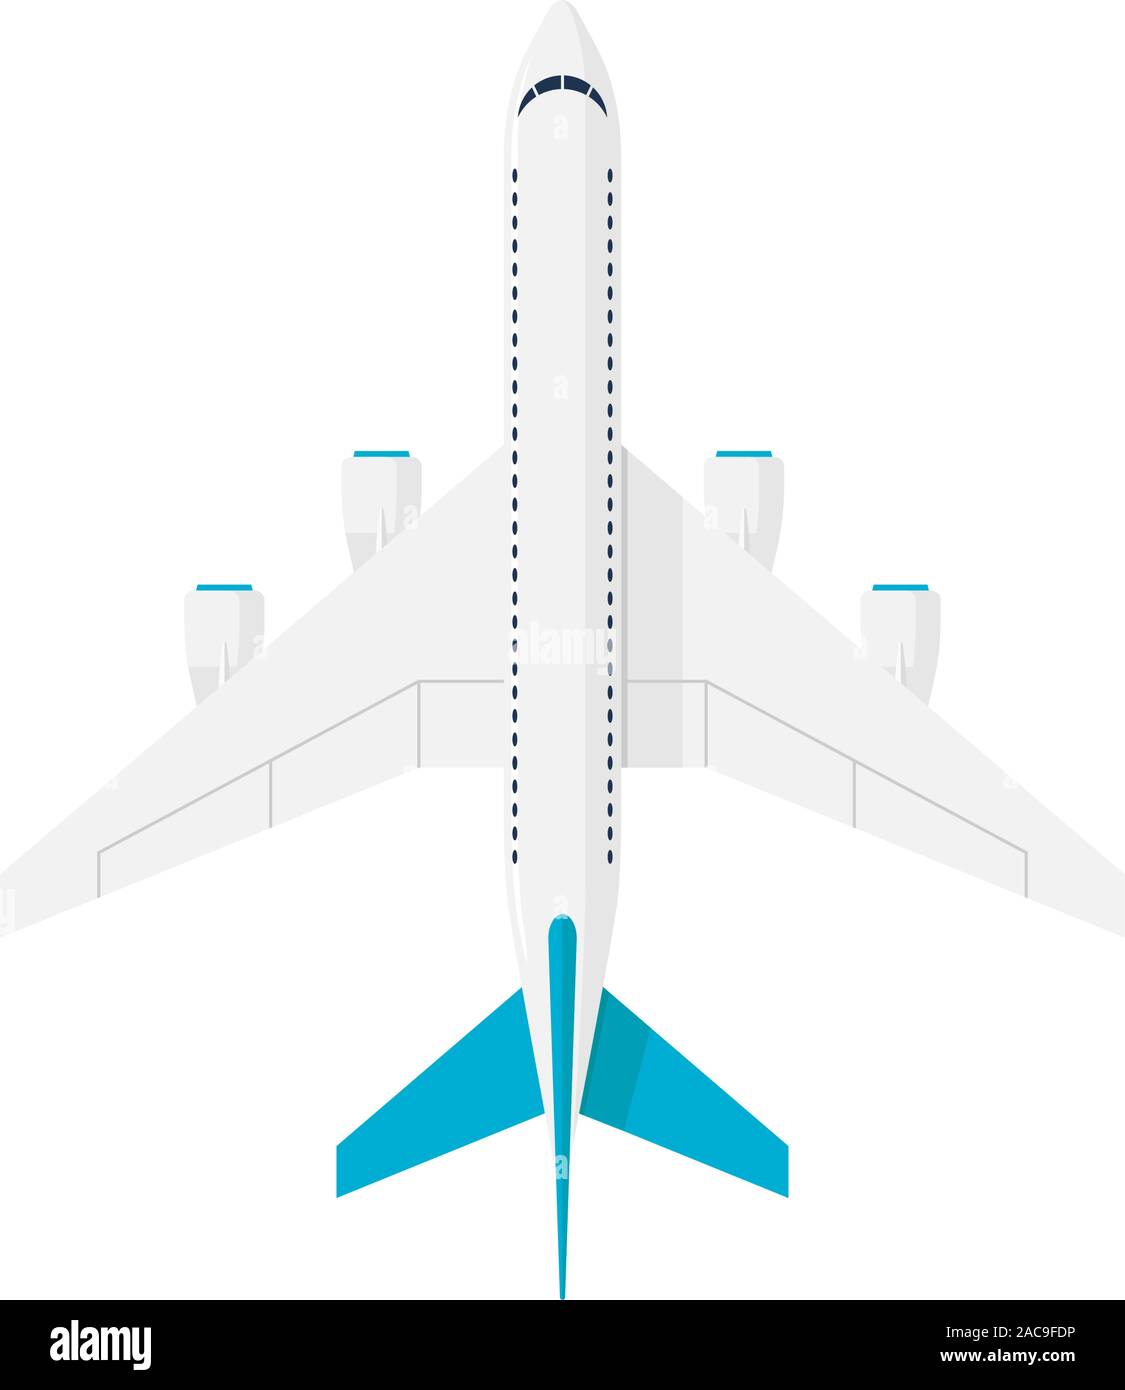 Jet gran avión de pasajeros con cuatro motores. Avión vuelo aviación civil vista desde arriba. Ilustración vectorial plana Ilustración del Vector